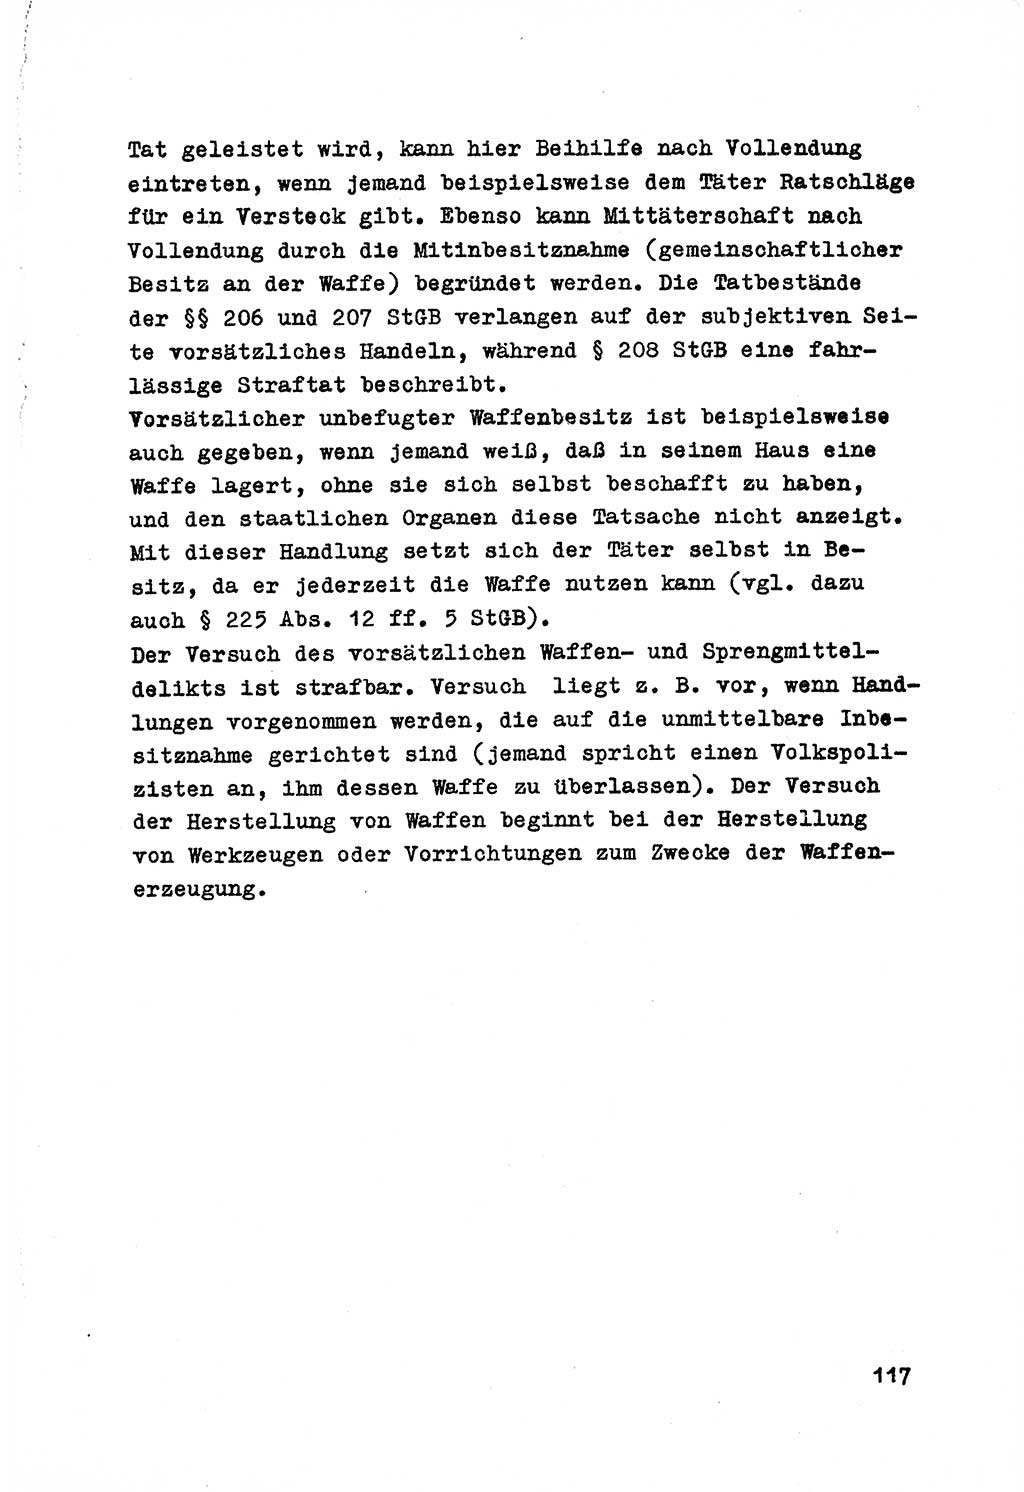 Strafrecht der DDR (Deutsche Demokratische Republik), Besonderer Teil, Lehrmaterial, Heft 7 1970, Seite 117 (Strafr. DDR BT Lehrmat. H. 7 1970, S. 117)